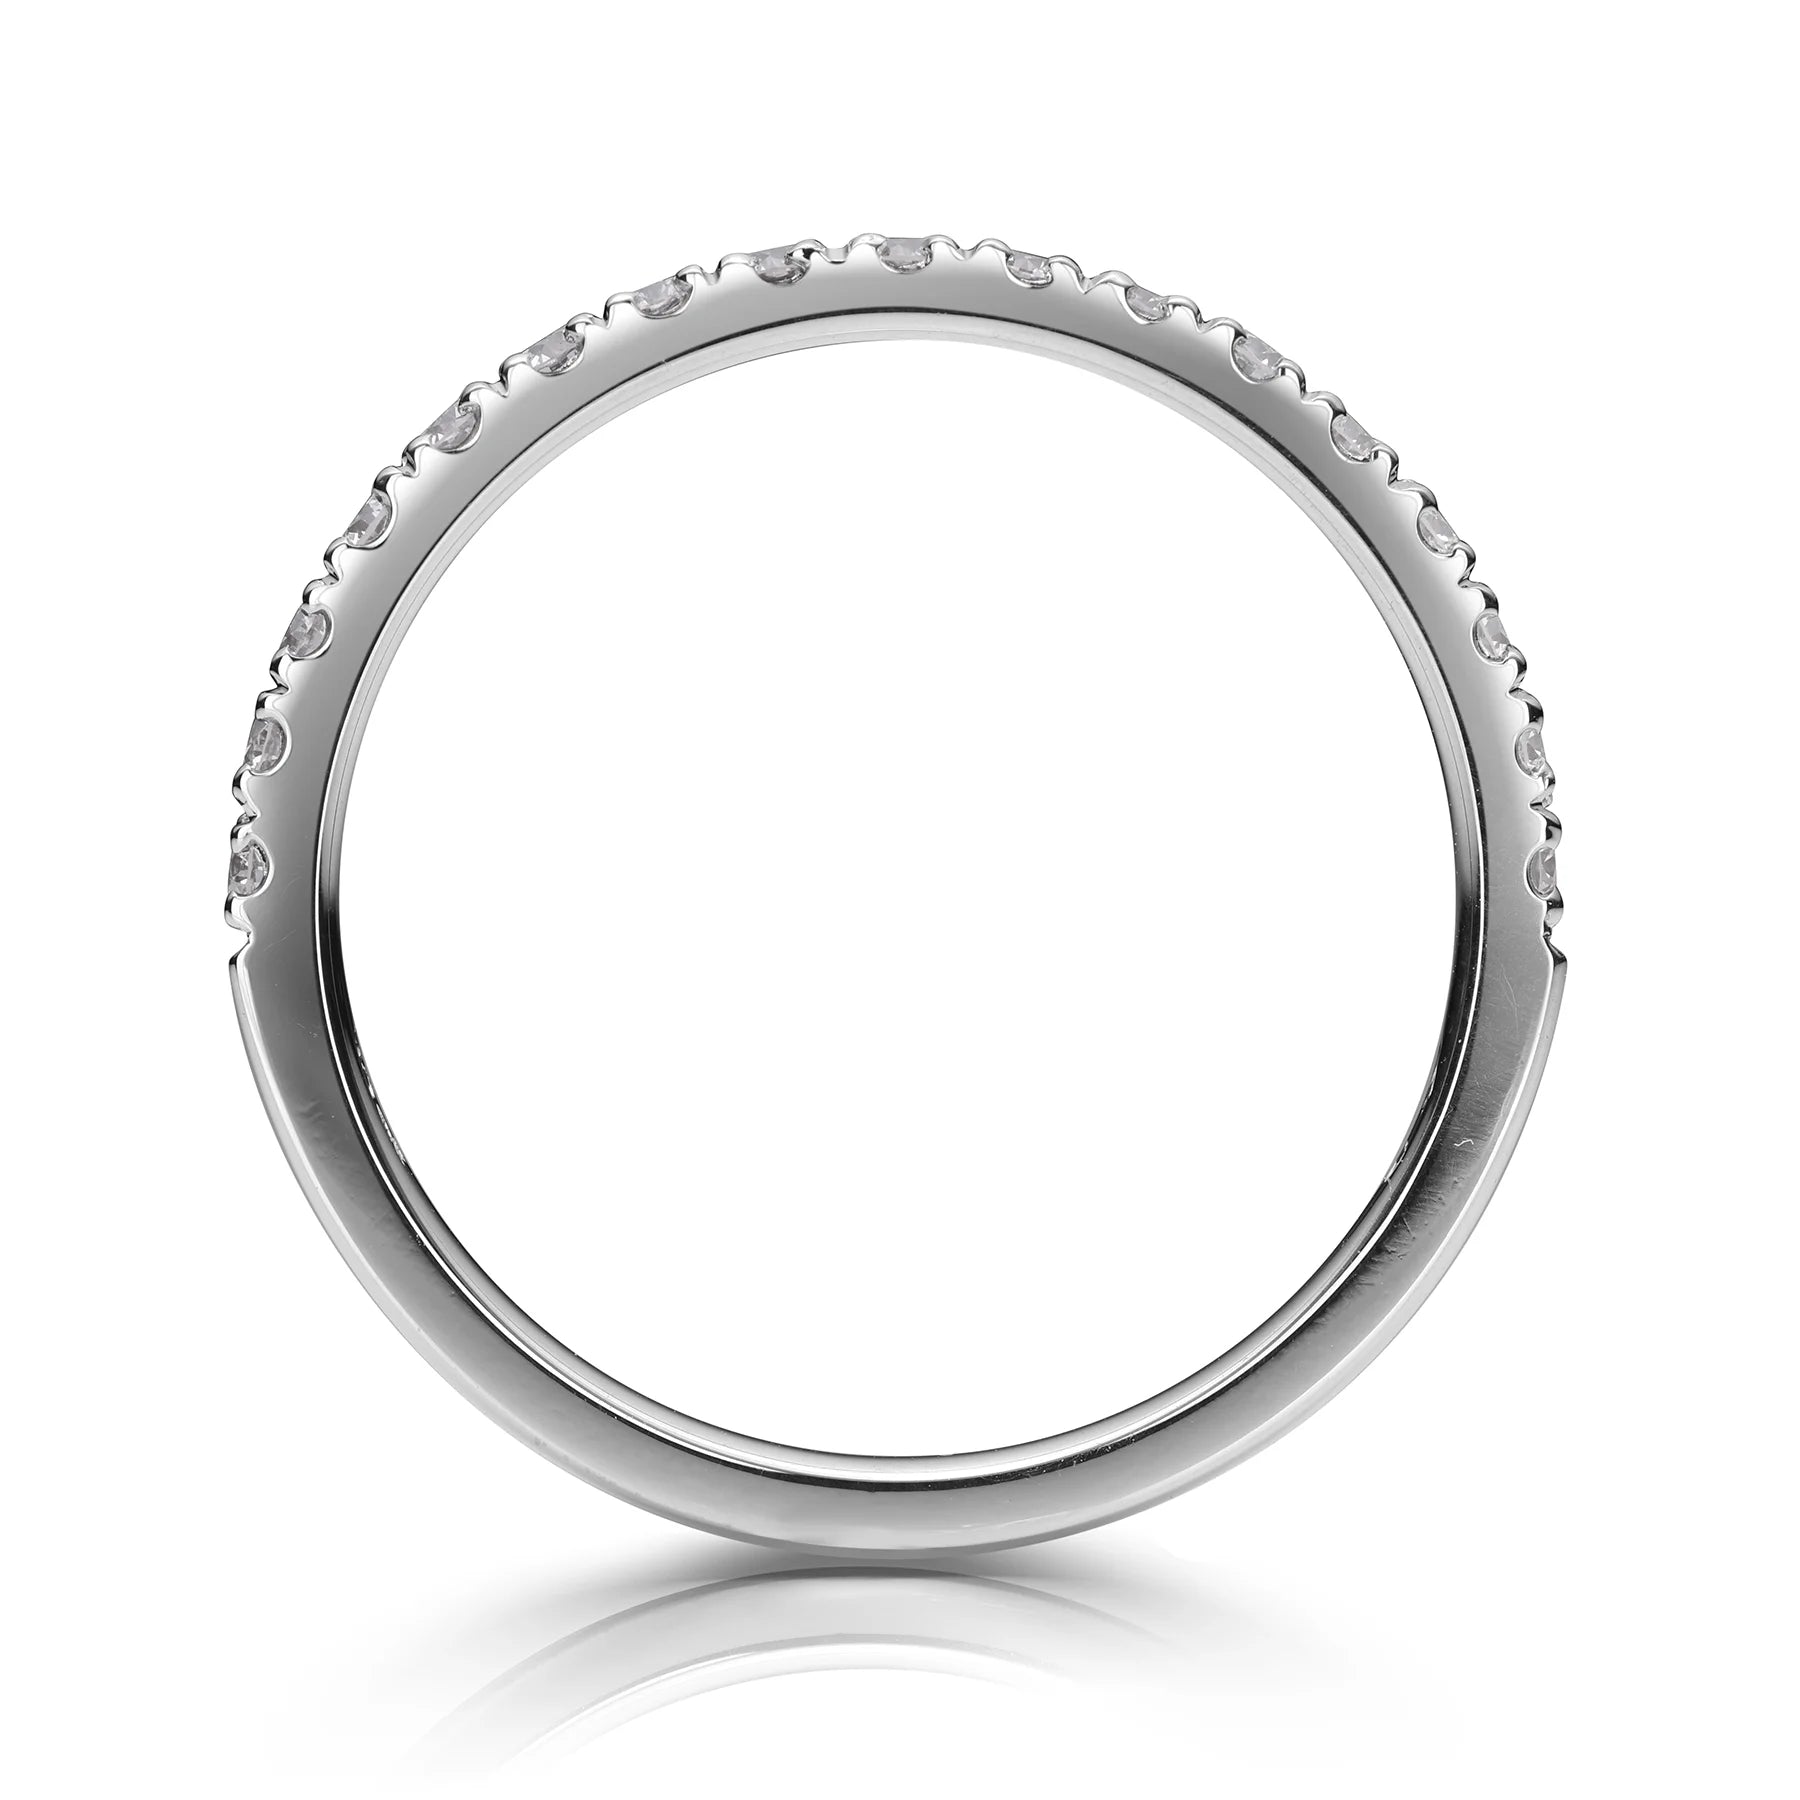 Blair - Wedding Ring